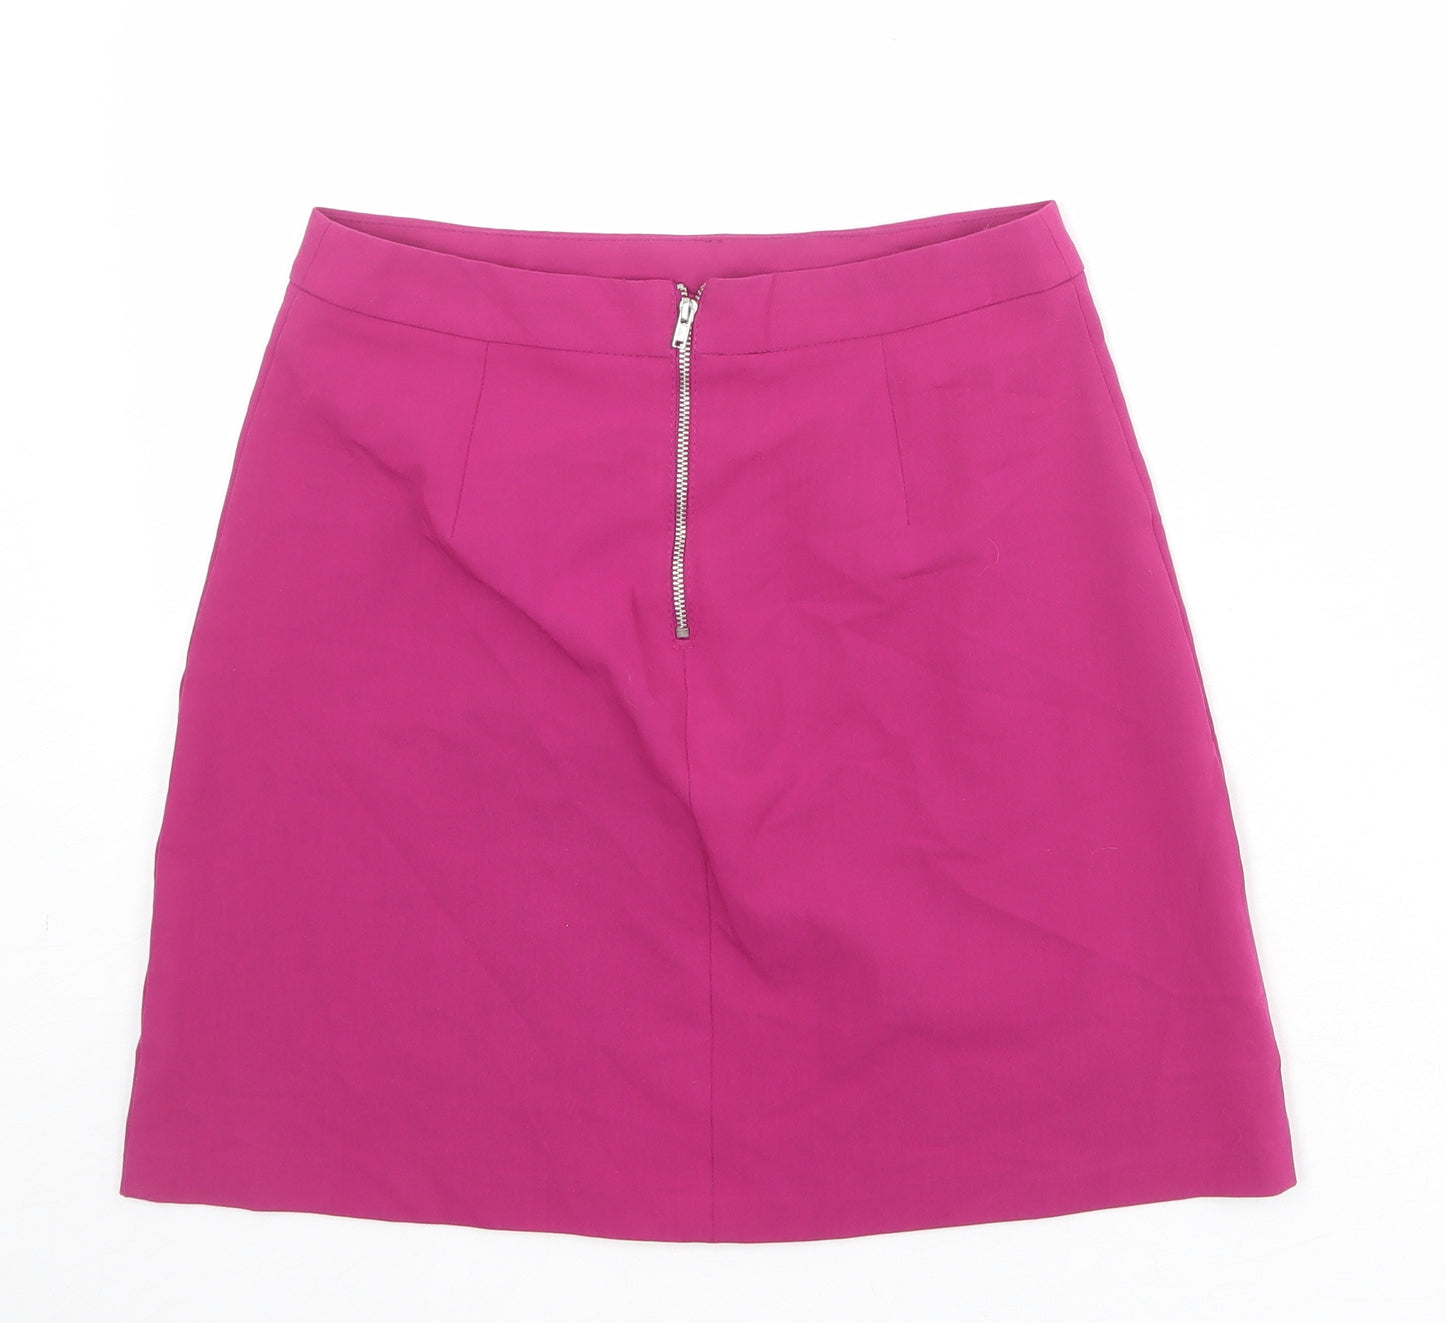 ASOS Womens Pink Viscose A-Line Skirt Size 8 Zip